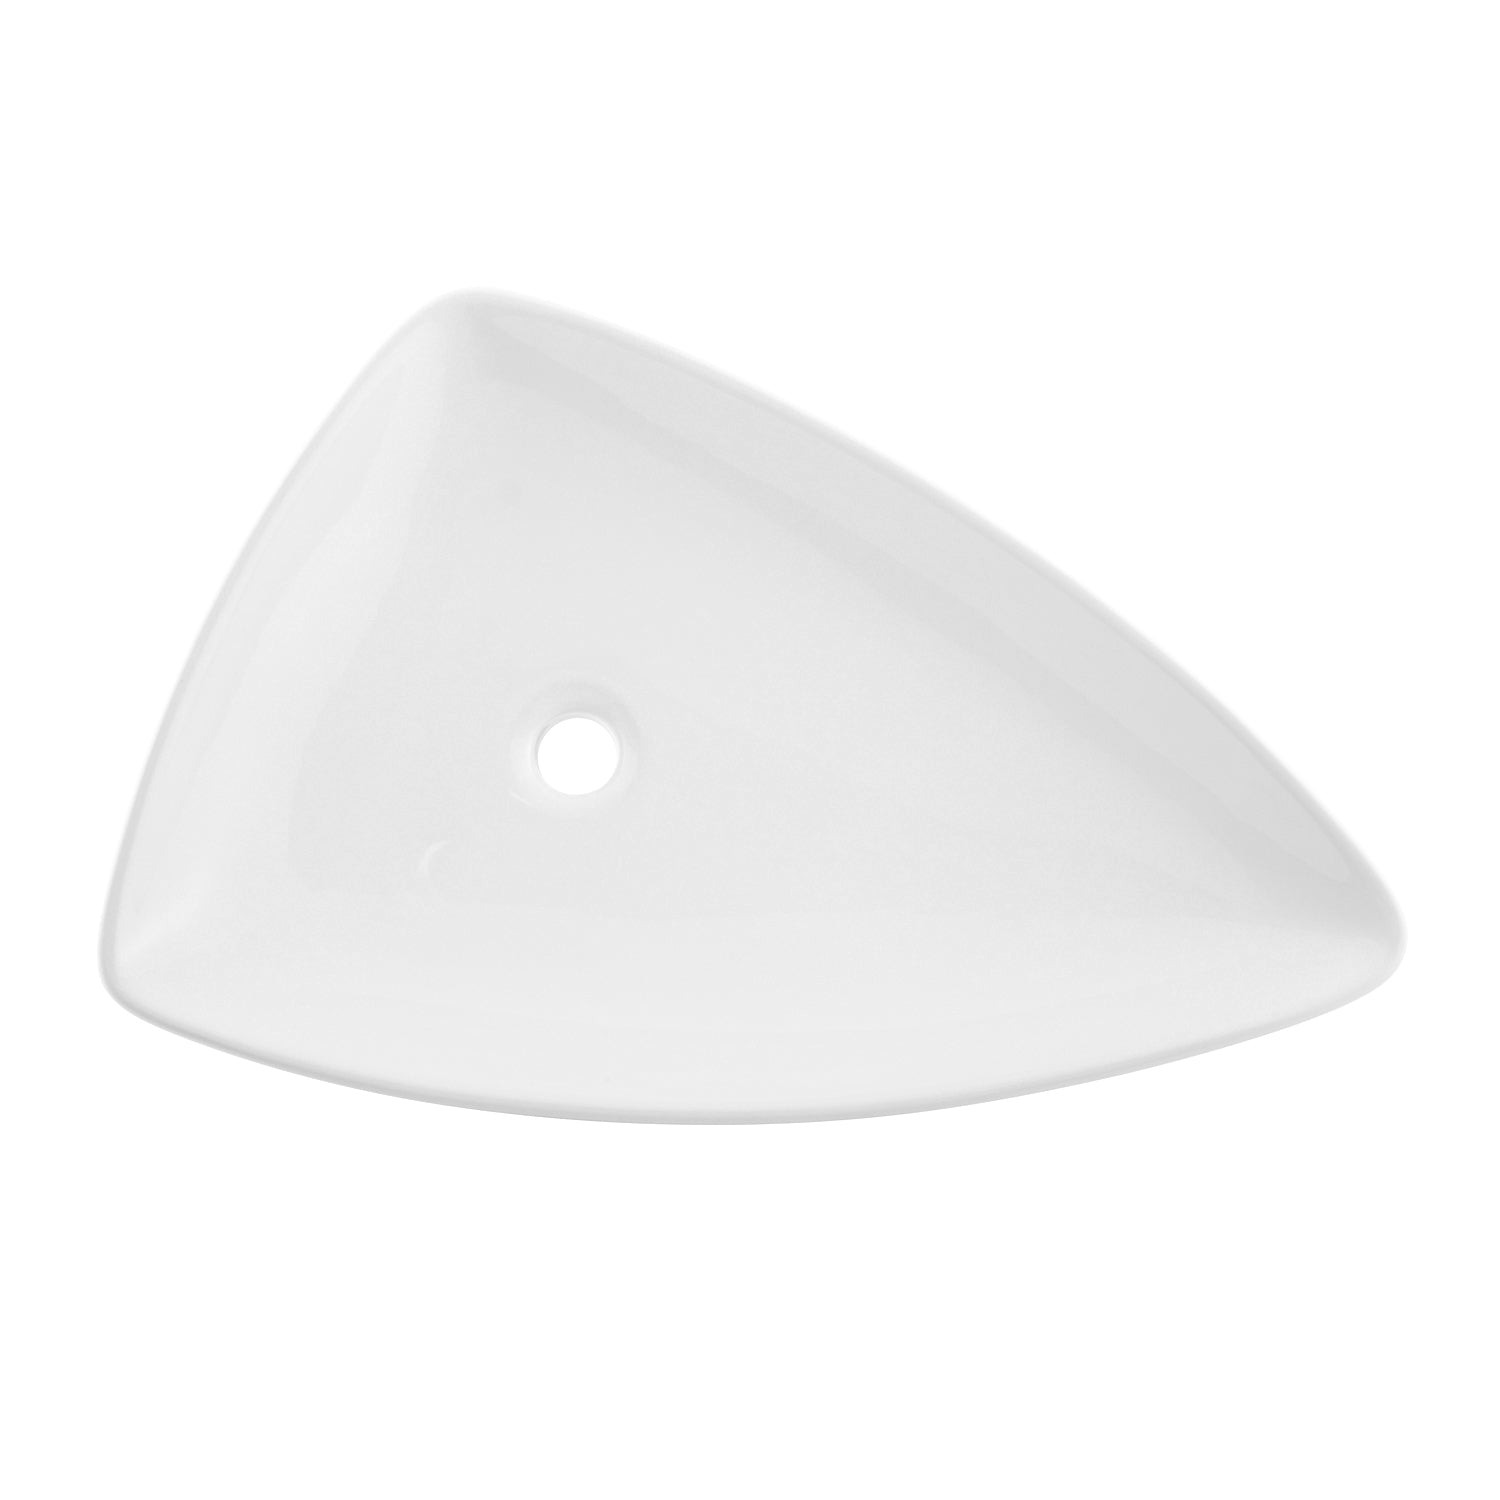 DAX Triángulo de cerámica Lavabo de recipiente individual para baño, acabado blanco, 26 x 18 x 5 pulgadas (BSN-223)